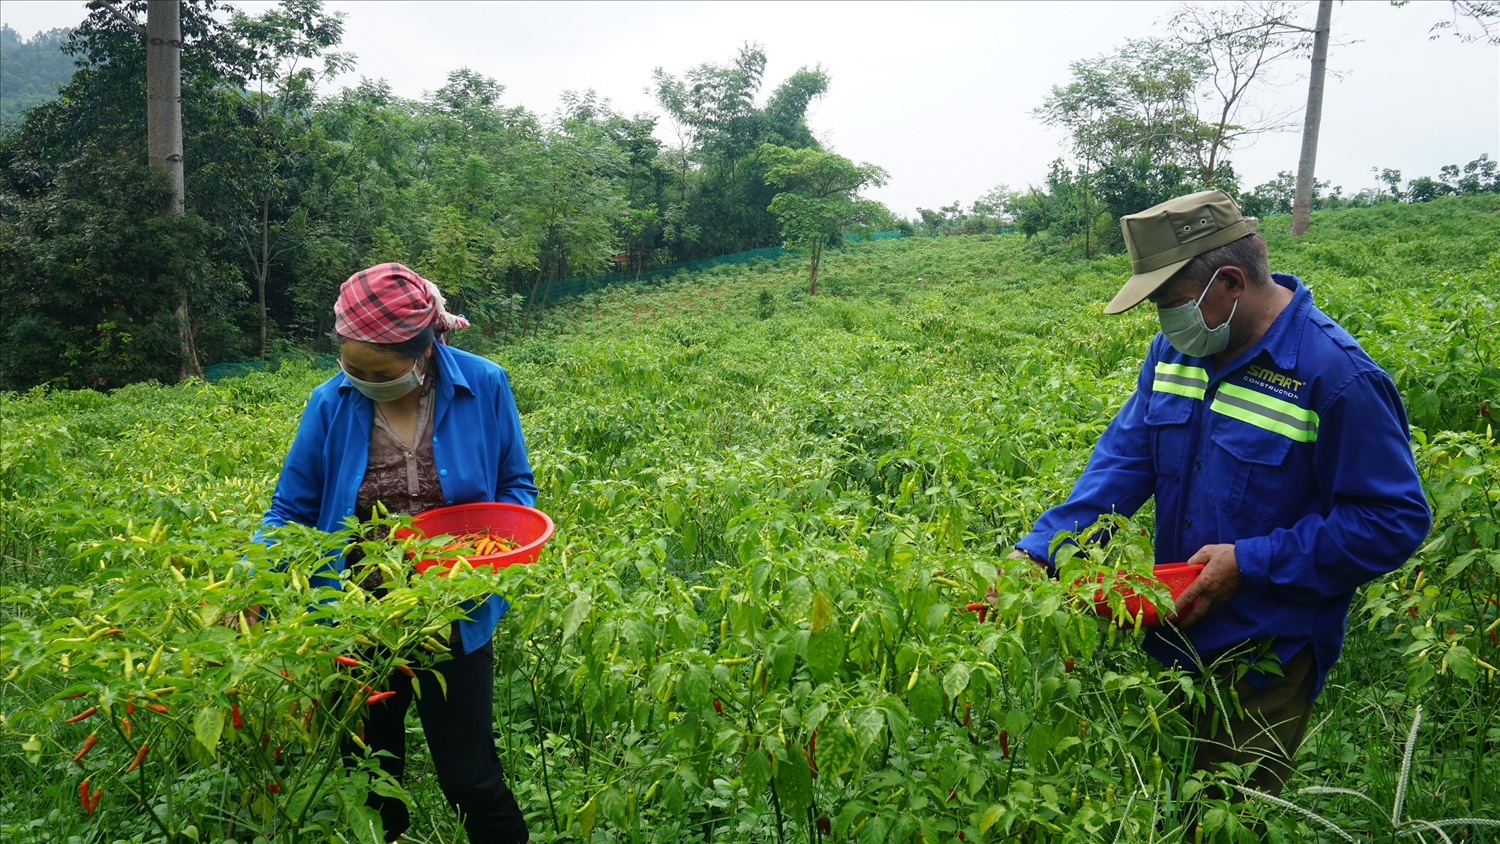 Thu nhập của người dân vùng cao Lào Cai ngày càng được cải thiện nhờ đưa những giống cây, con mới vào gieo trồng